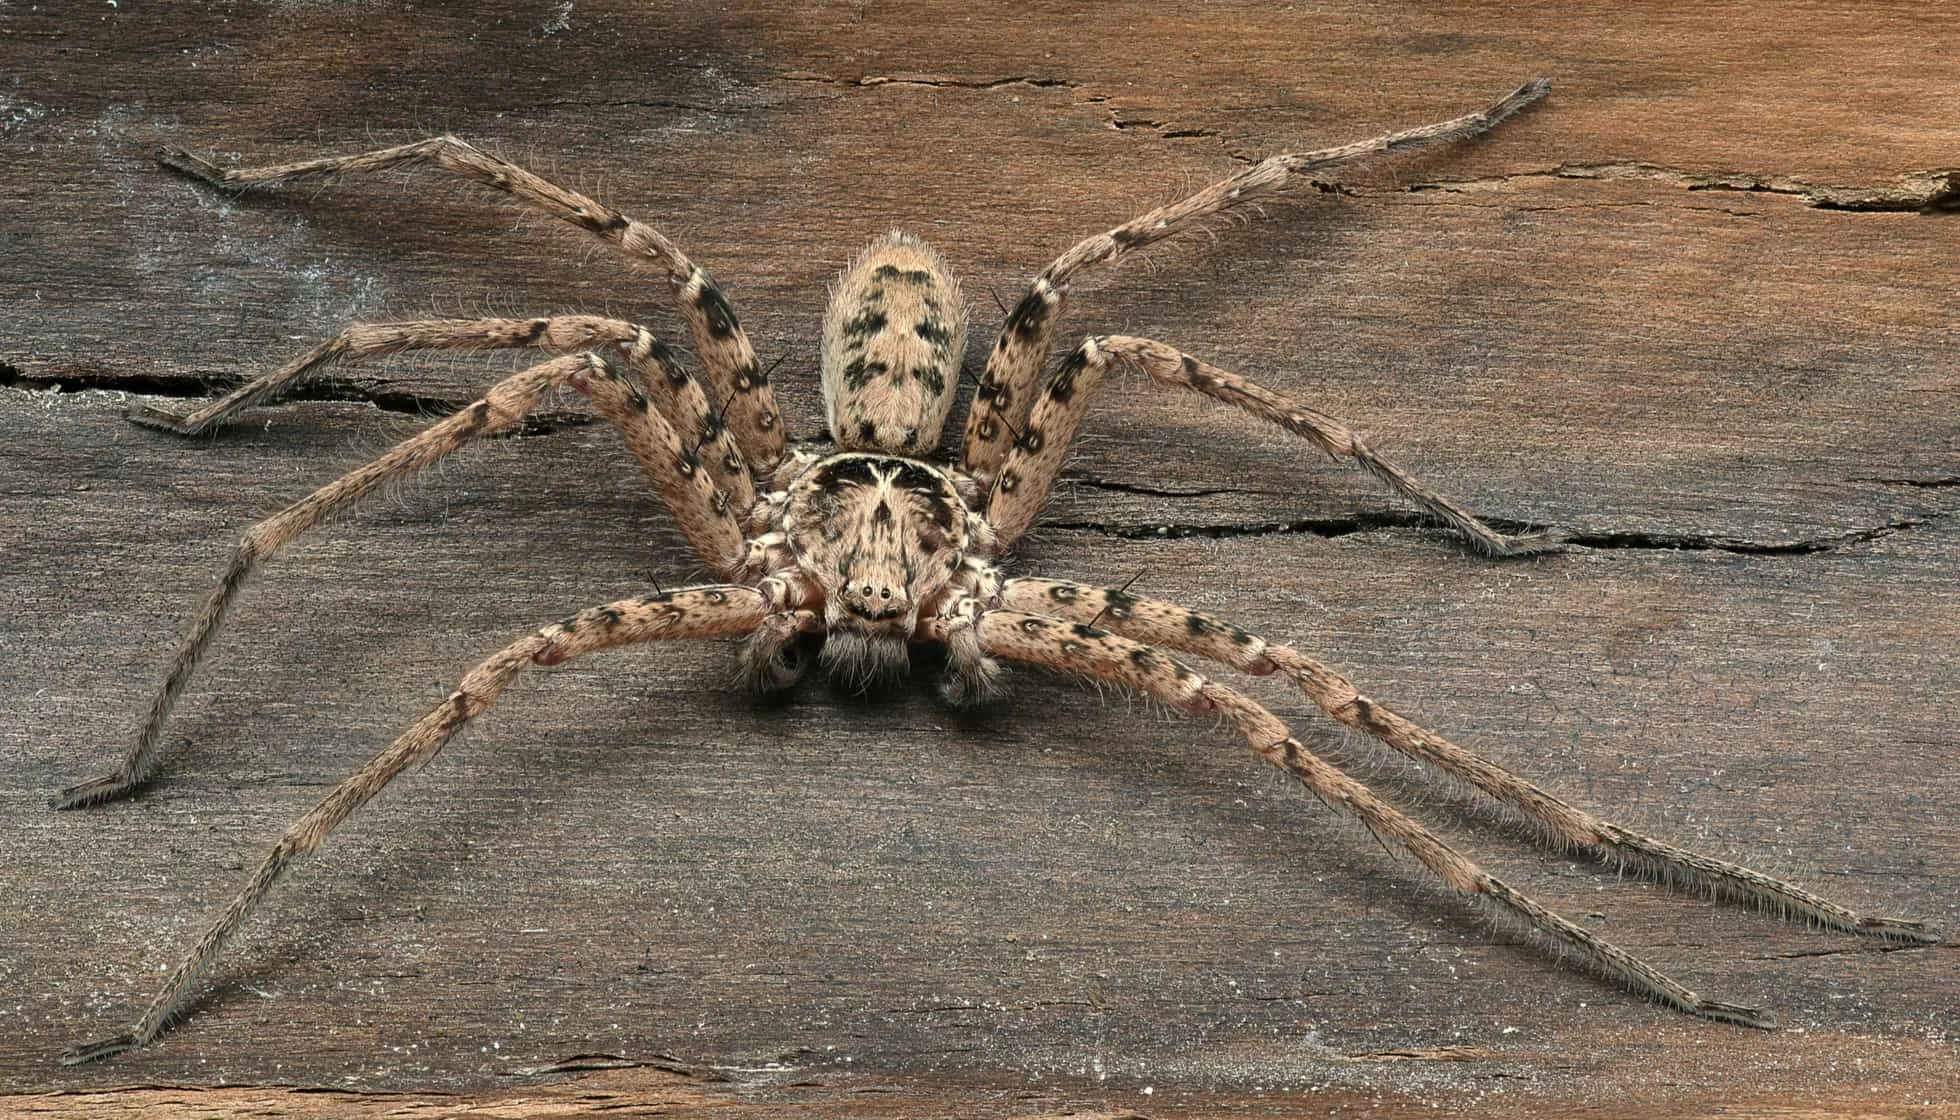 Giant Huntsman Spider